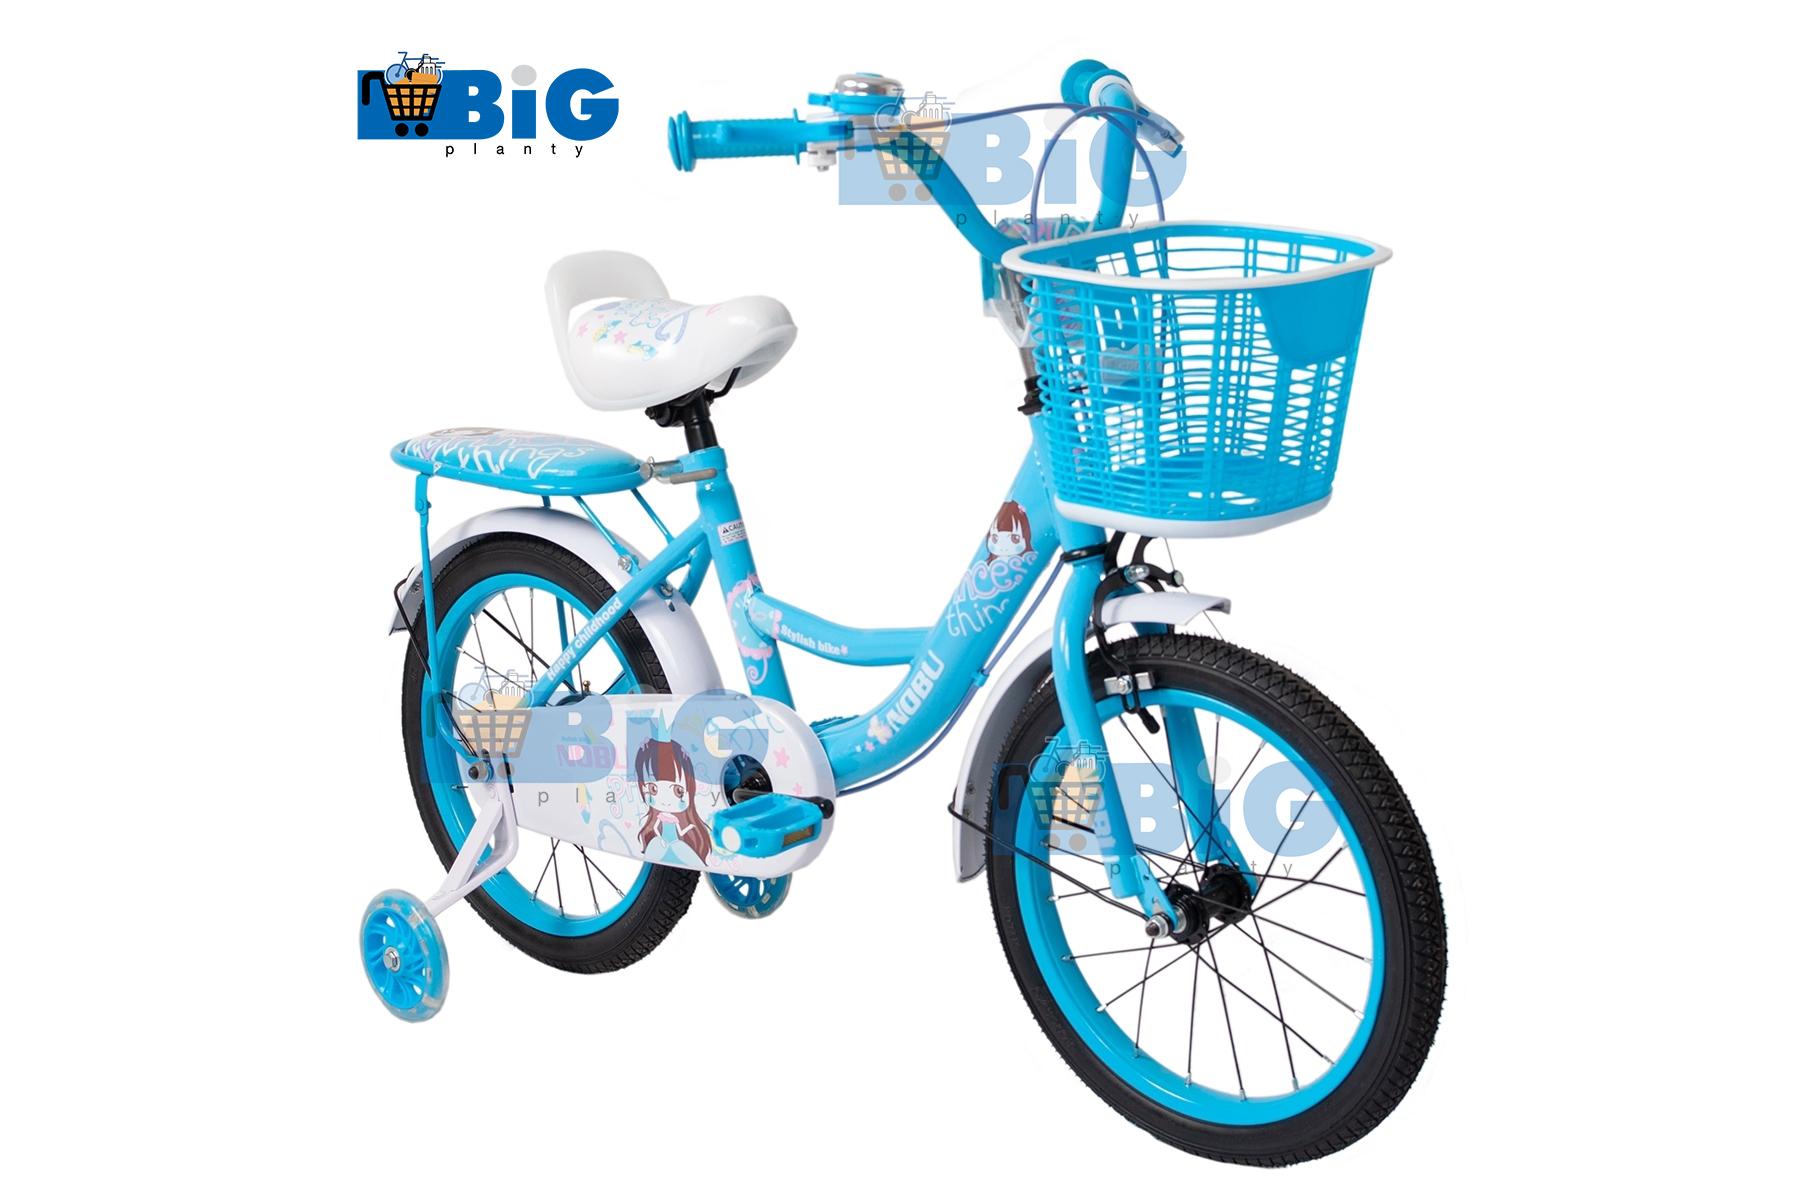 BigPlantyจักรยานเด็กเจ้าหญิงสุดหวาน No.1000 สีฟ้า 16นิ้ว